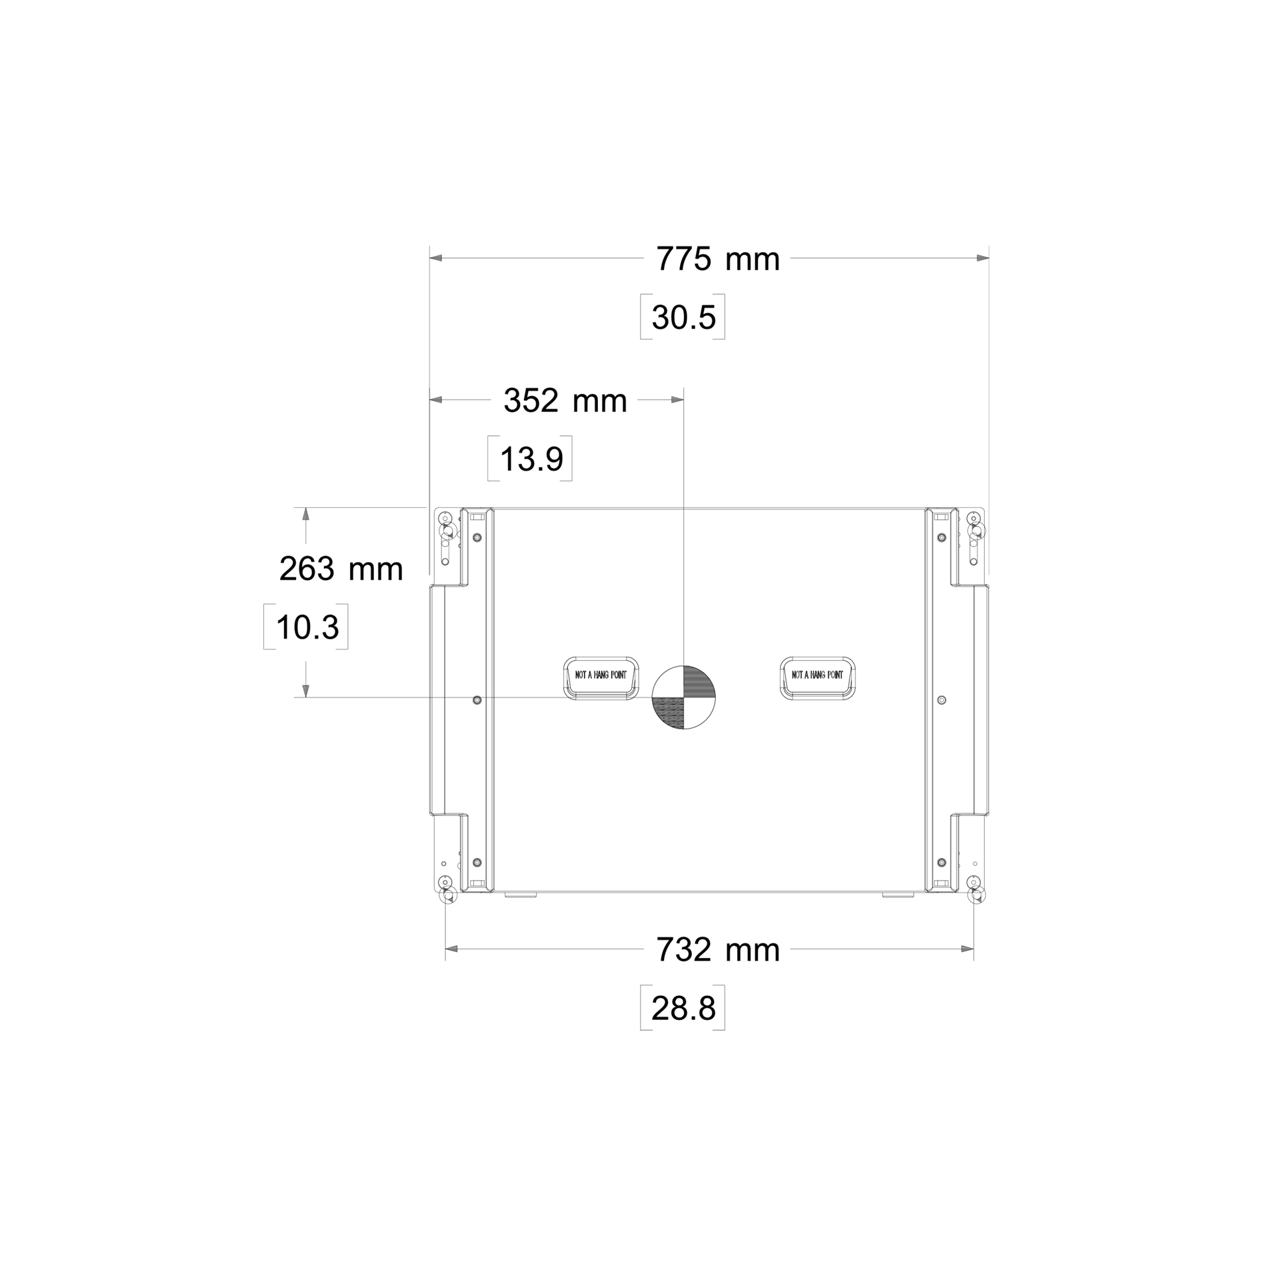 メカニカルダイアグラム右図